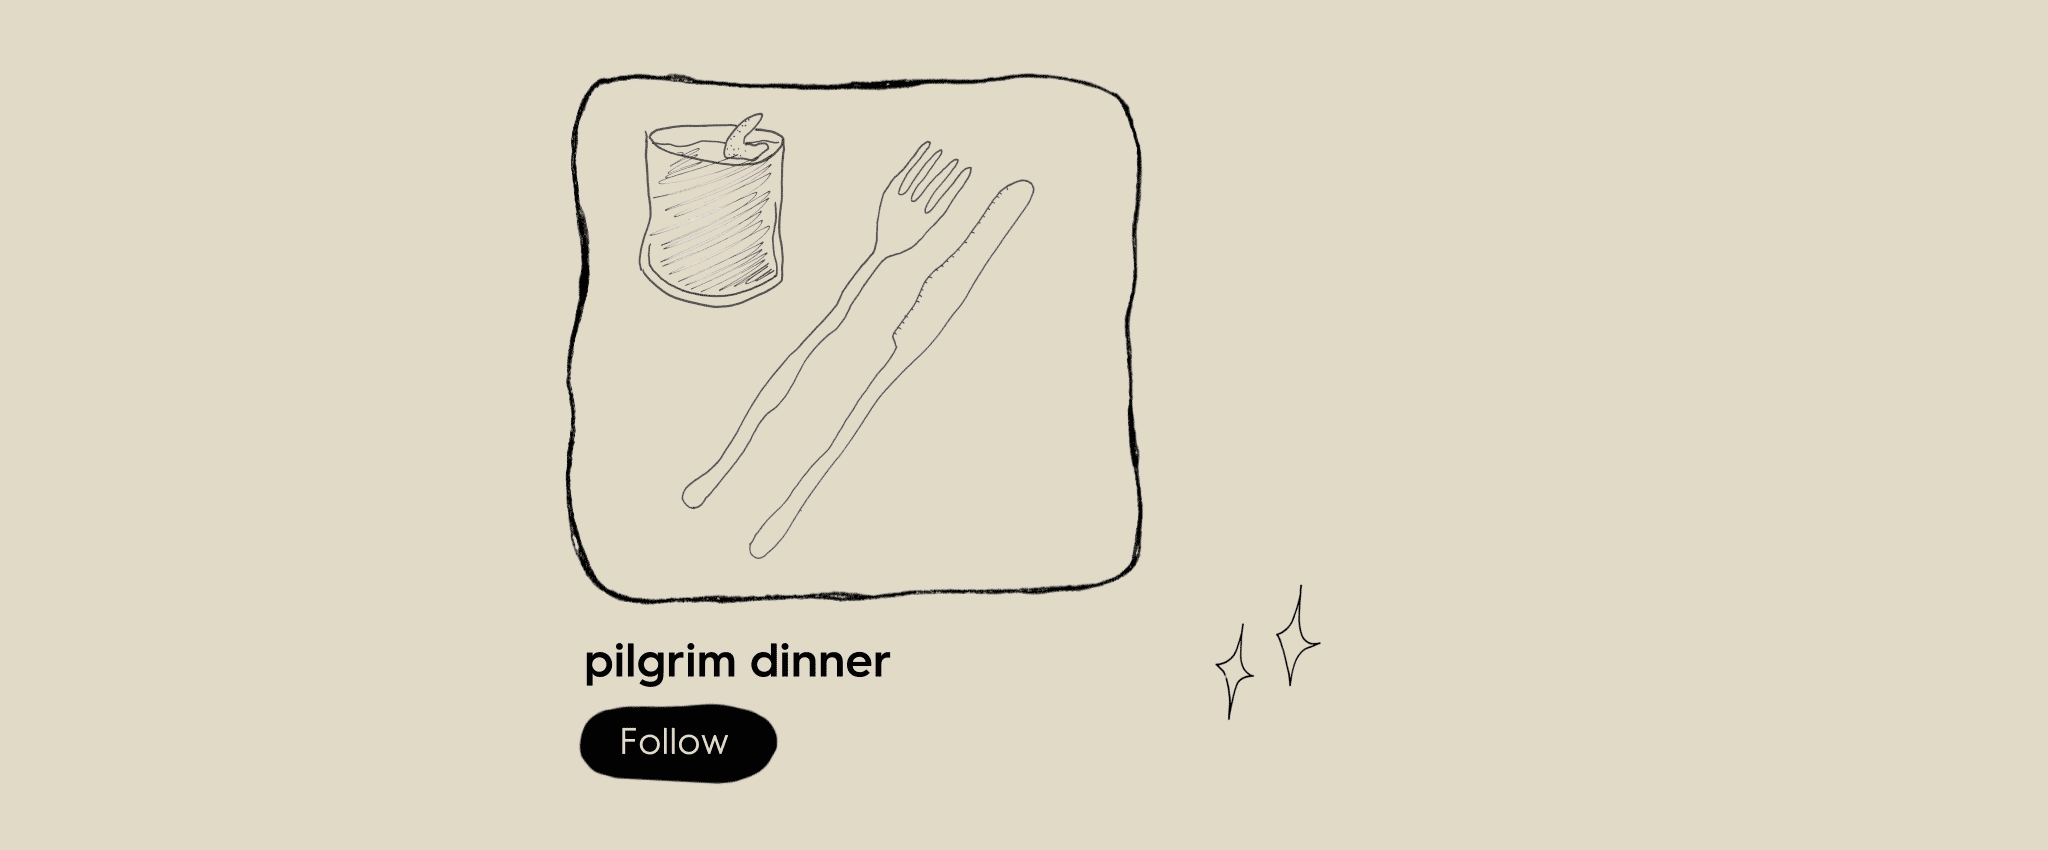 Pilgrim dinner